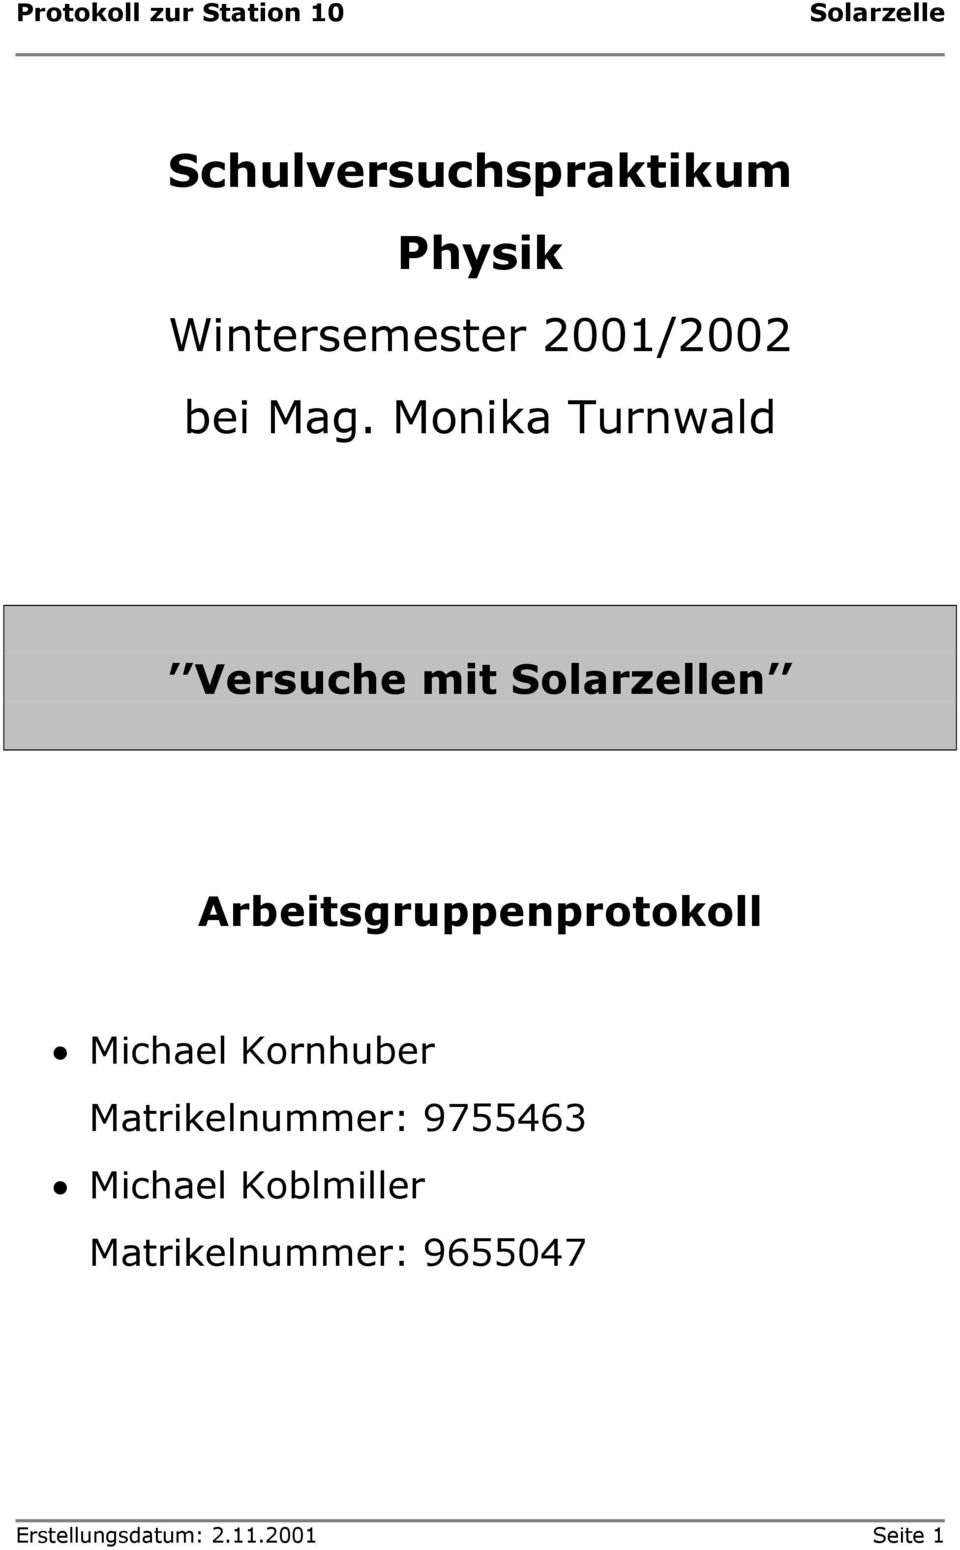 Michael Kornhuber Matrikelnummer: 9755463 Michael